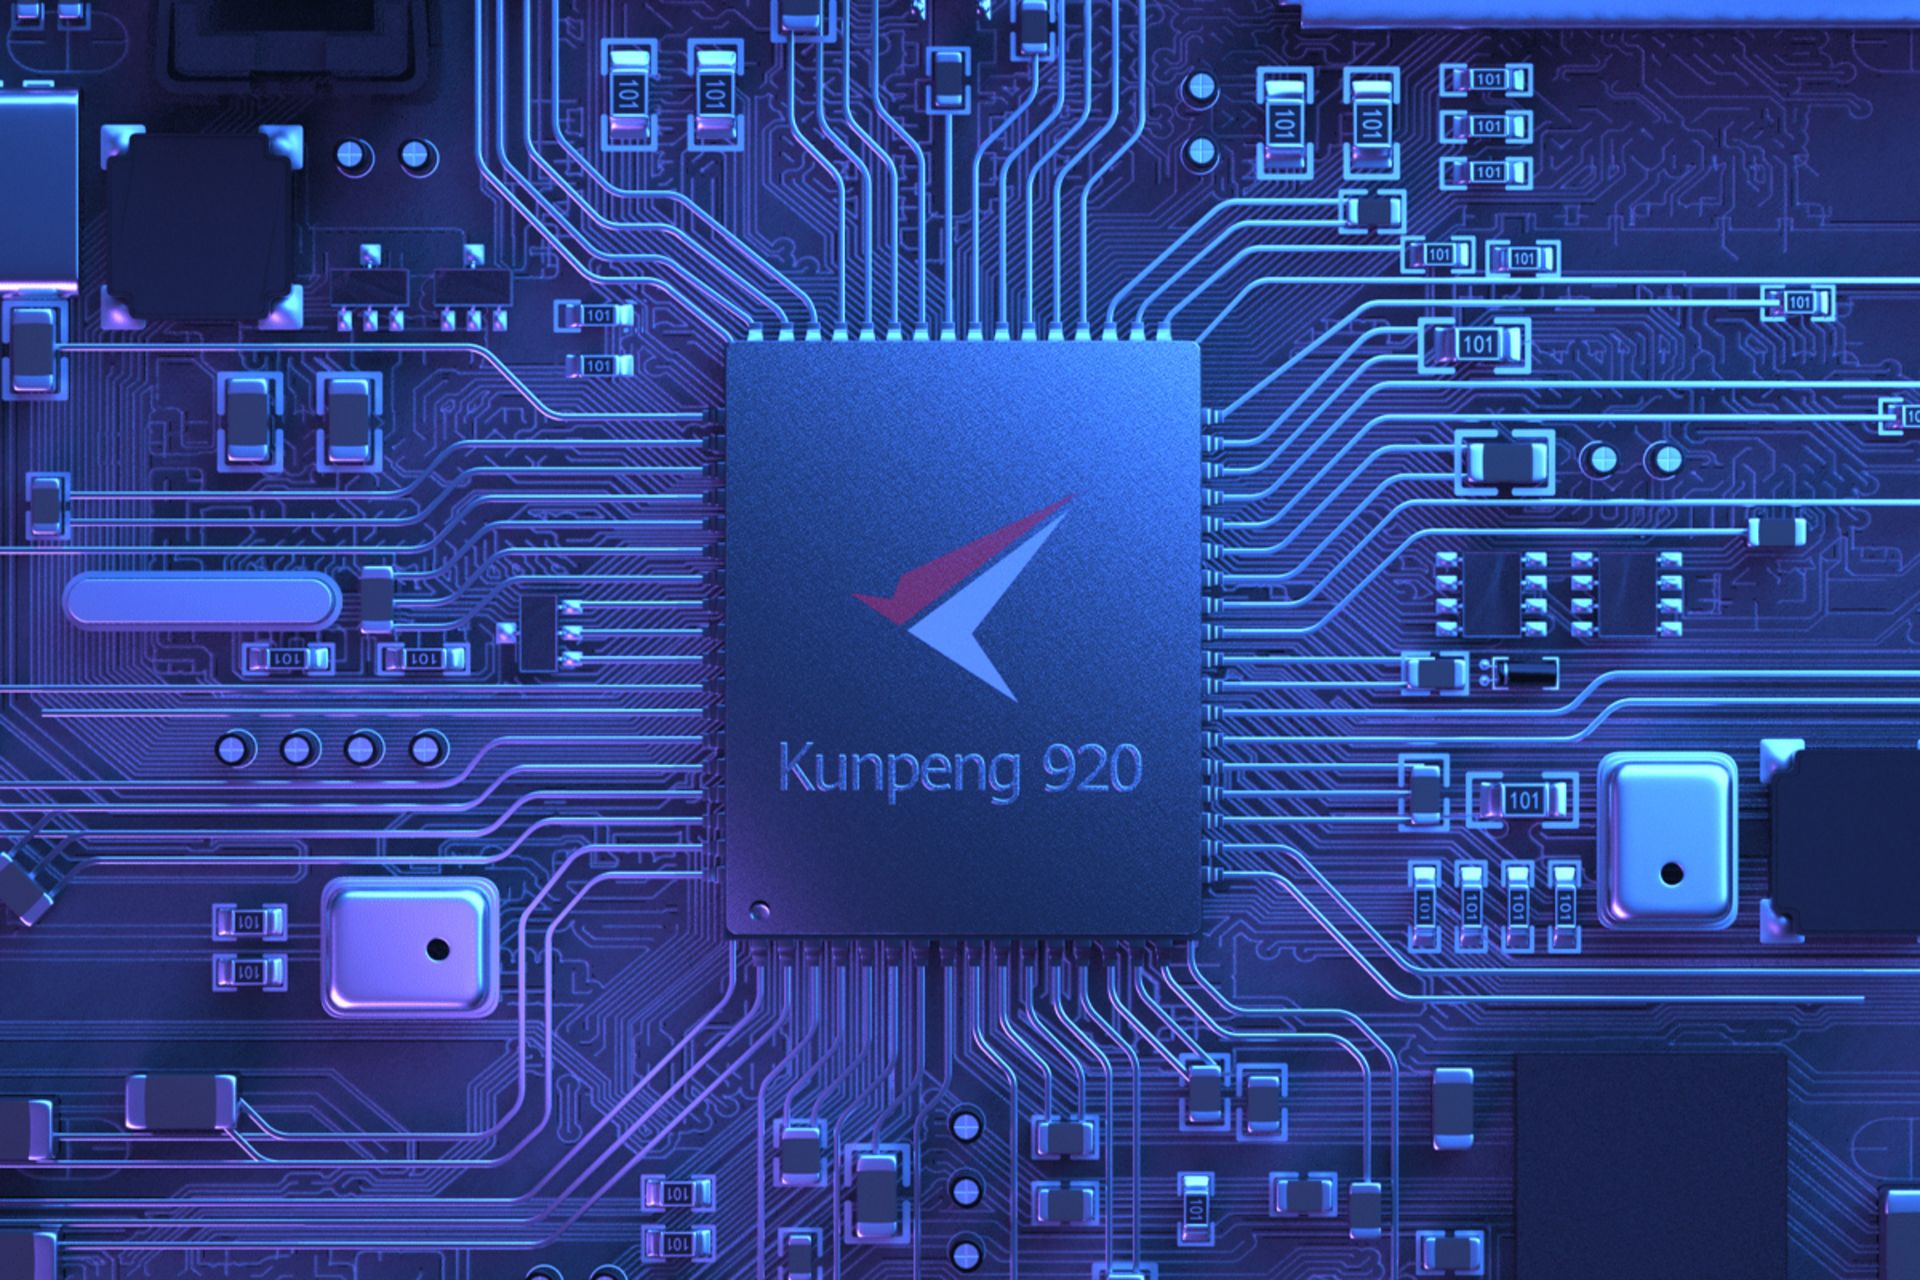 مرجع متخصصين ايران پردازنده كان پنگ 920 هواوي / Huawei Kunpeng 920